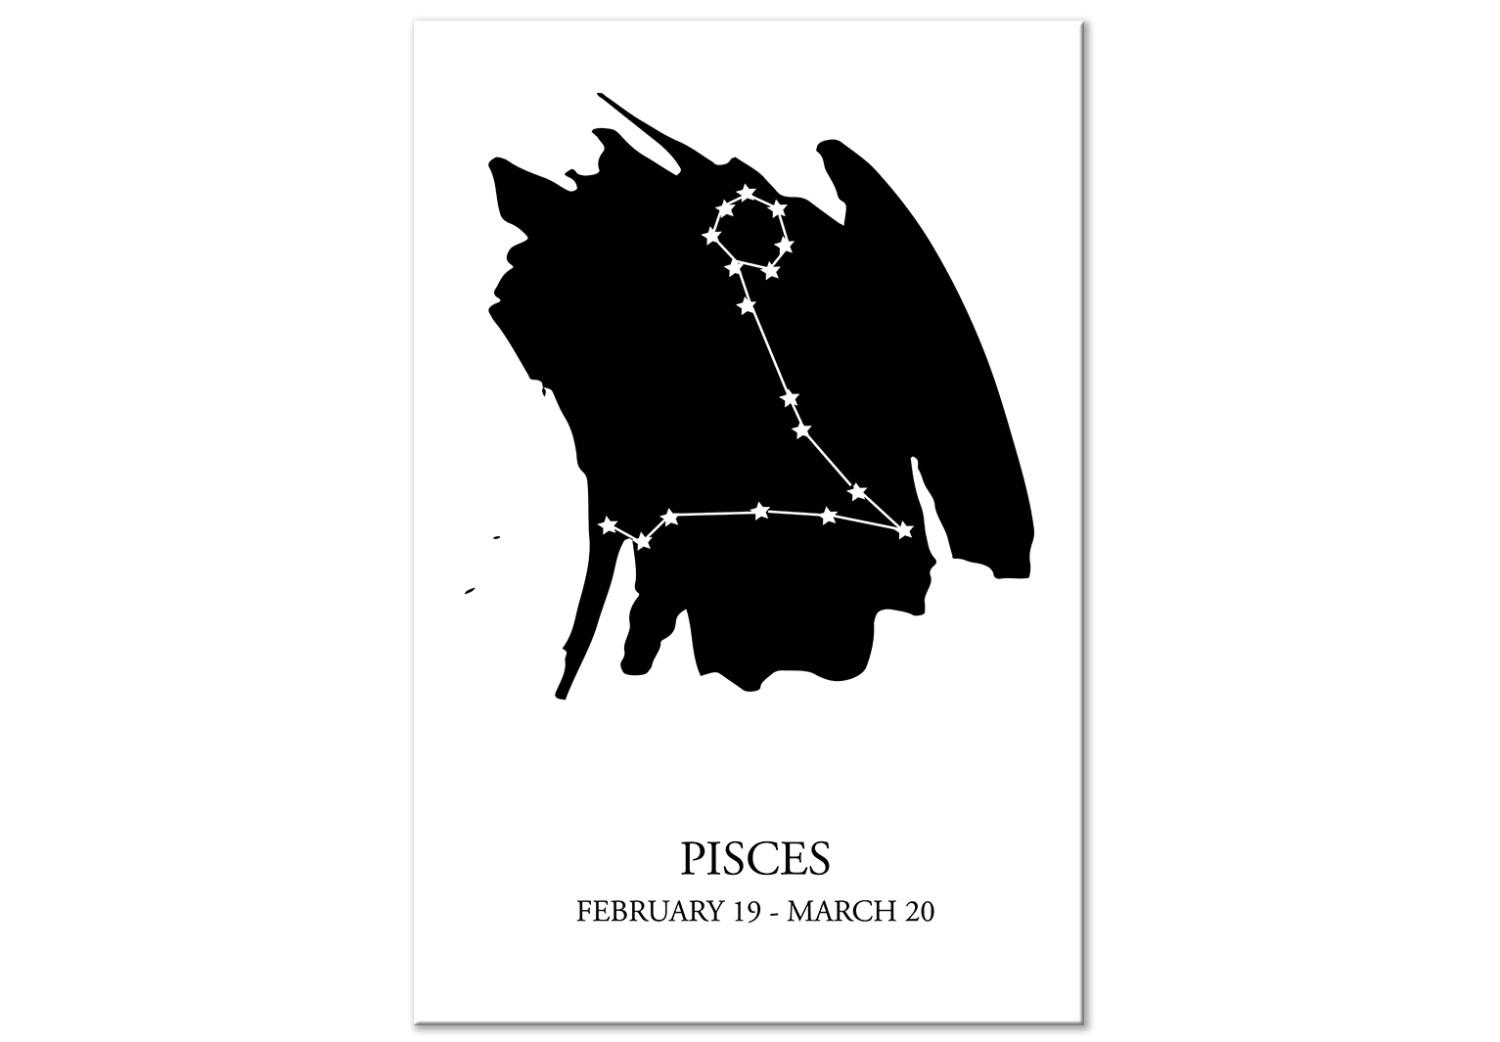 Cuadro decorativo Piscis - un gráfico minimalista que representa el signo del zodíaco